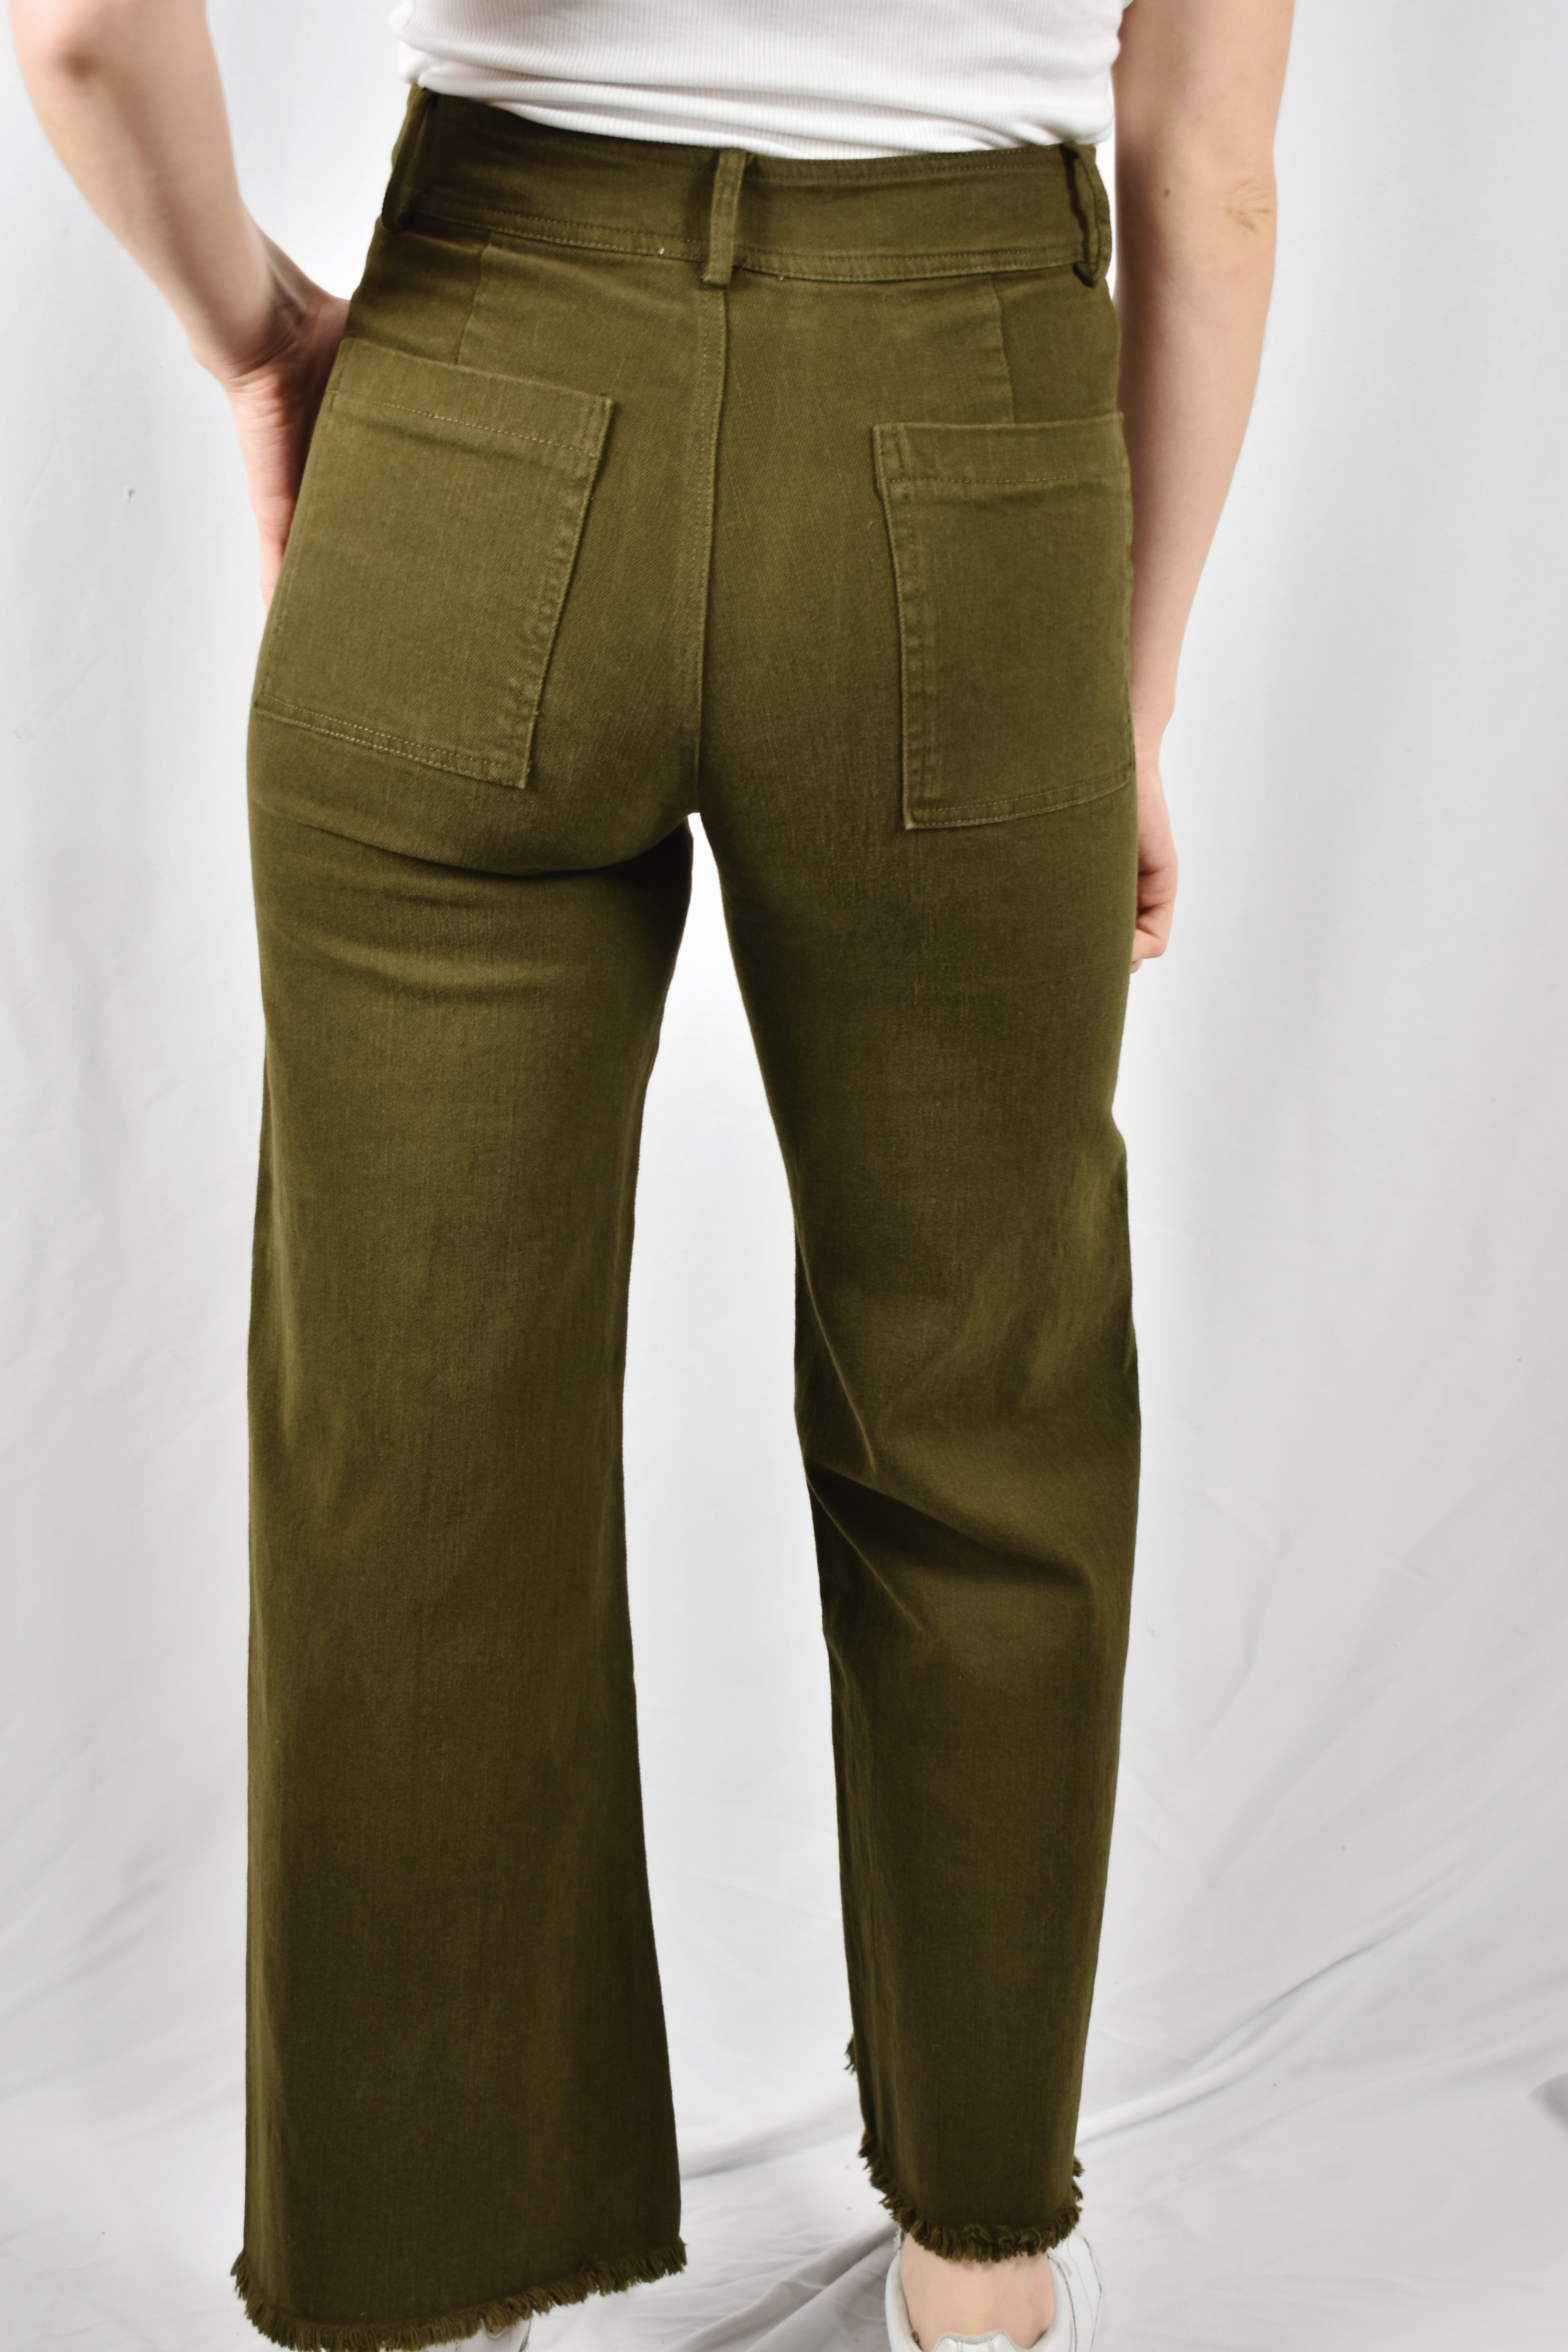 Olive Women Trousers - Buy Olive Women Trousers online in India